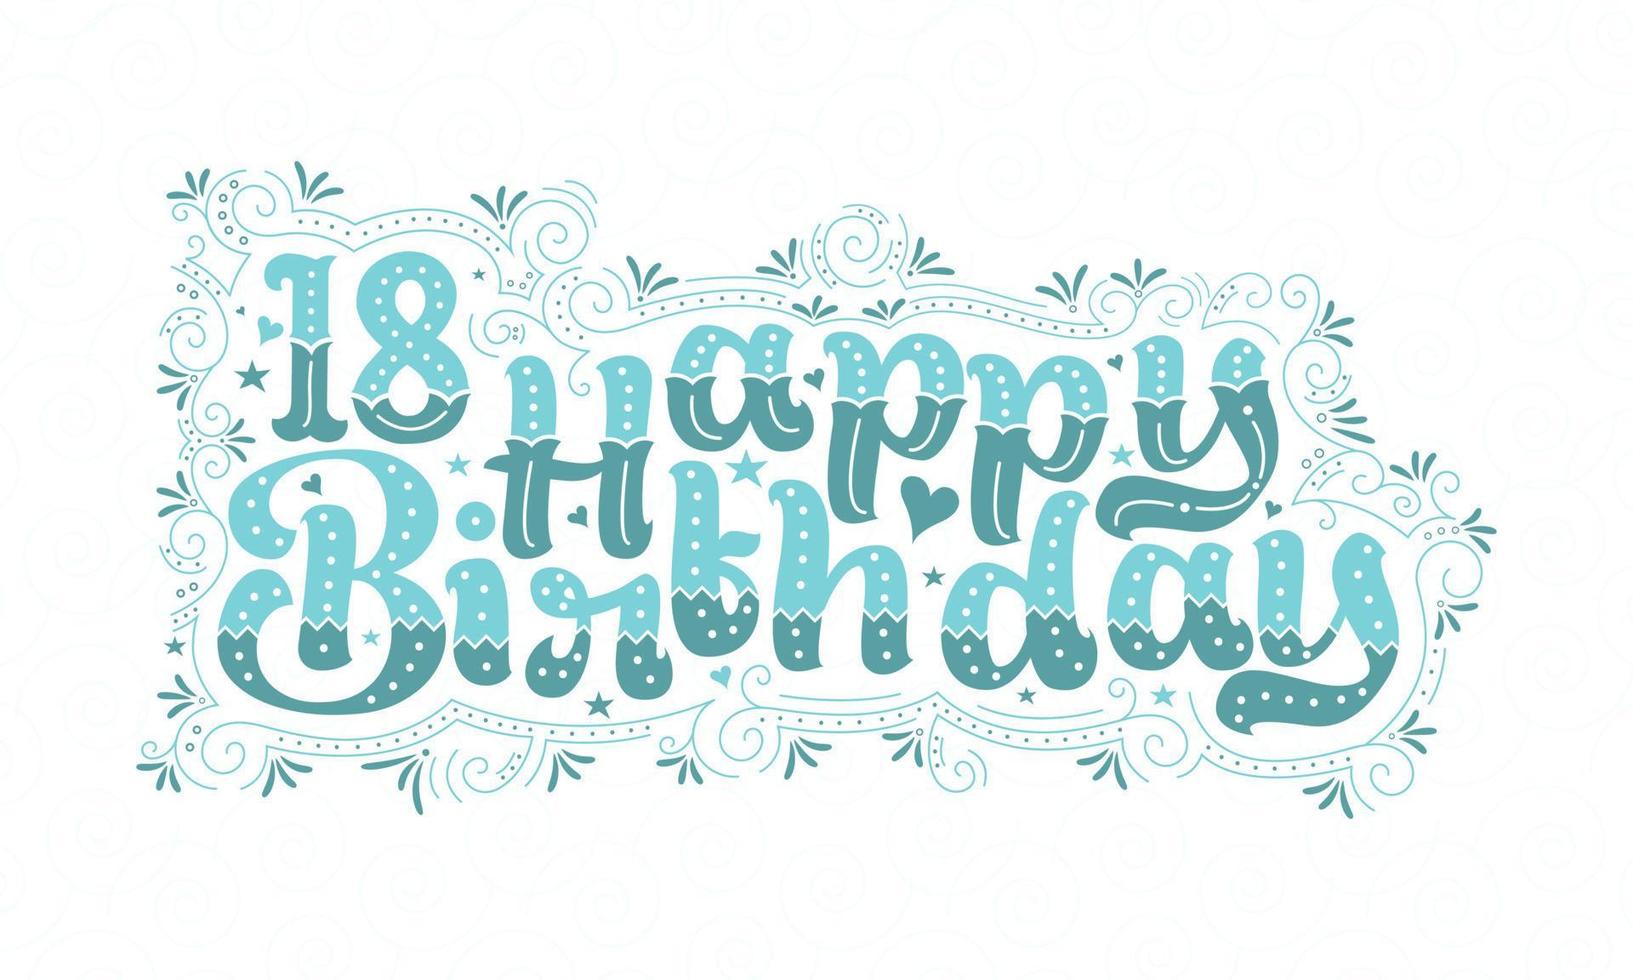 18e gelukkige verjaardag belettering, 18 jaar verjaardag mooi typografieontwerp met aqua stippen, lijnen en bladeren. vector